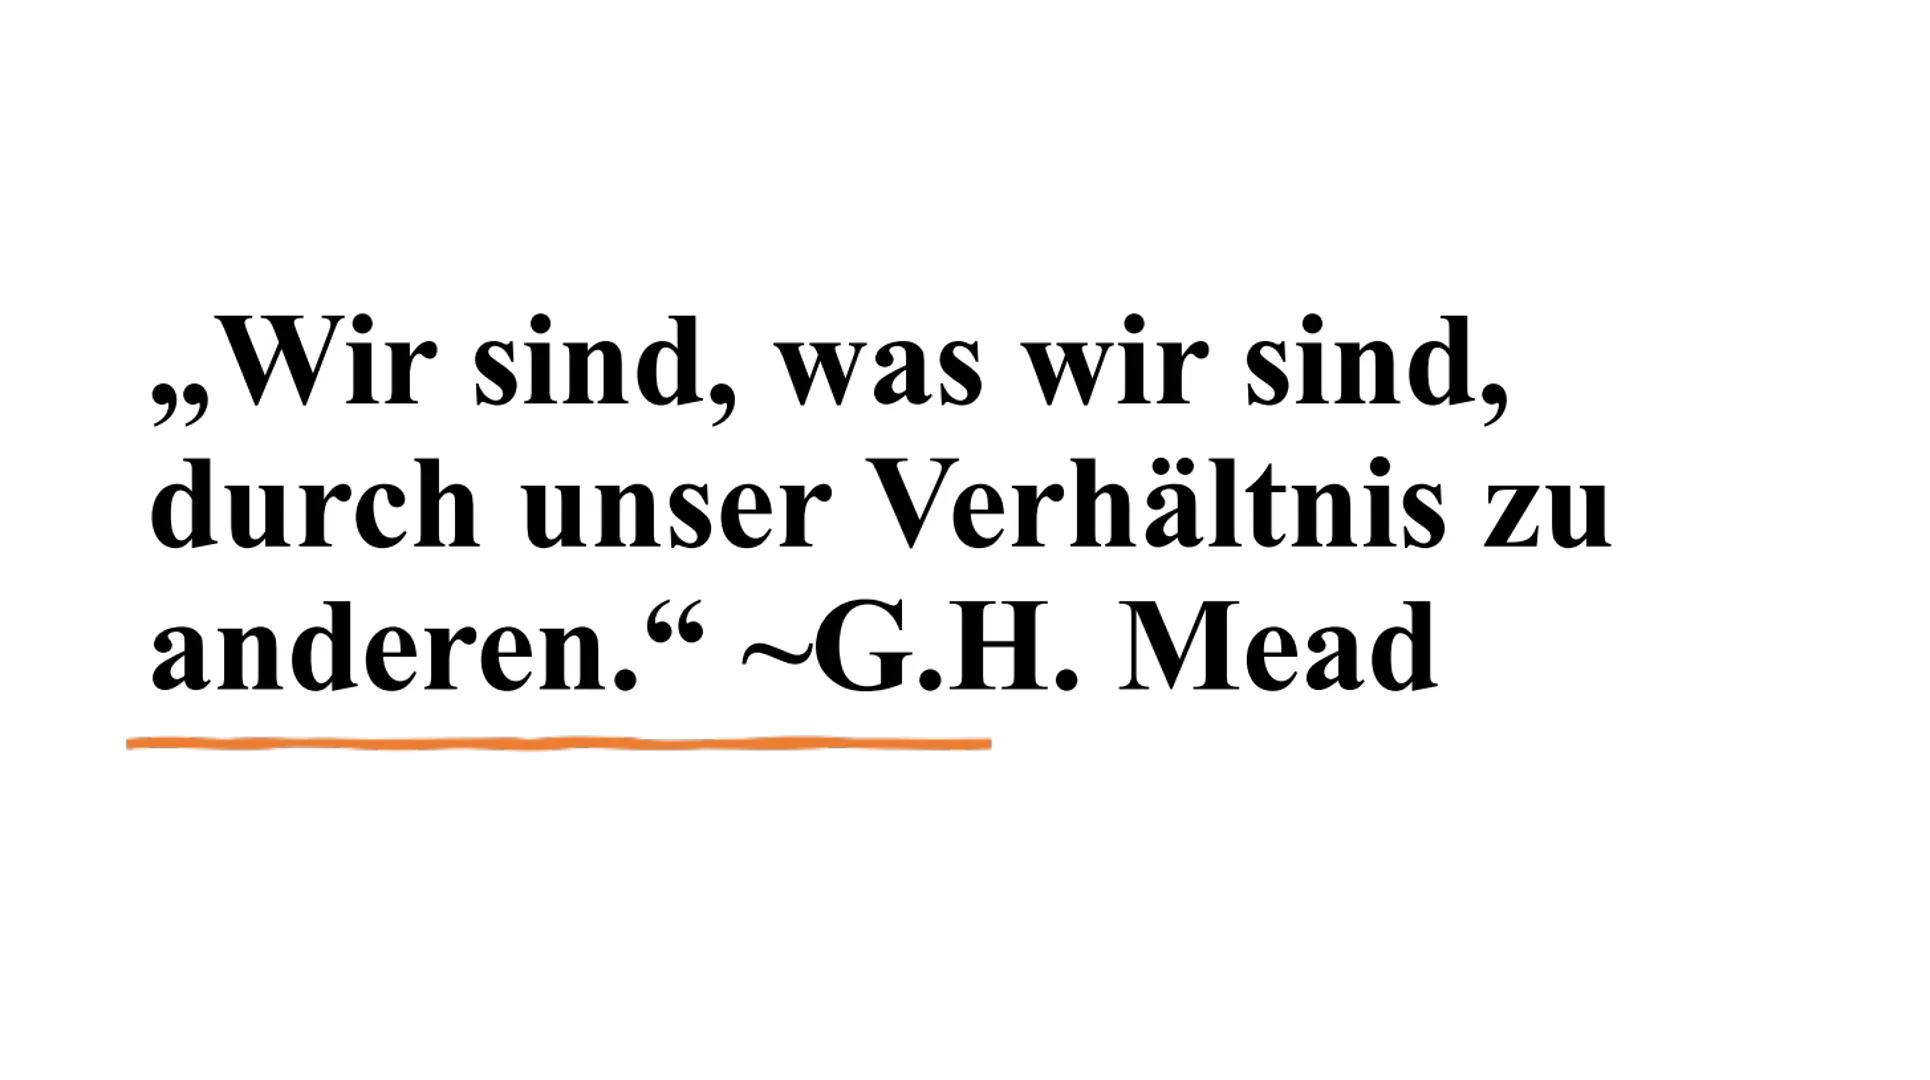 SYMBOLISCHER
INTERAKTIONISMUS
GEORGE HERBERT MEAD
Von: Eva, Sofie 1.
2.
3.
4.
5.
6.
GLIEDERUNG 7.
8.
9.
10.
11.
12.
13.
14.
15.
Biographisch